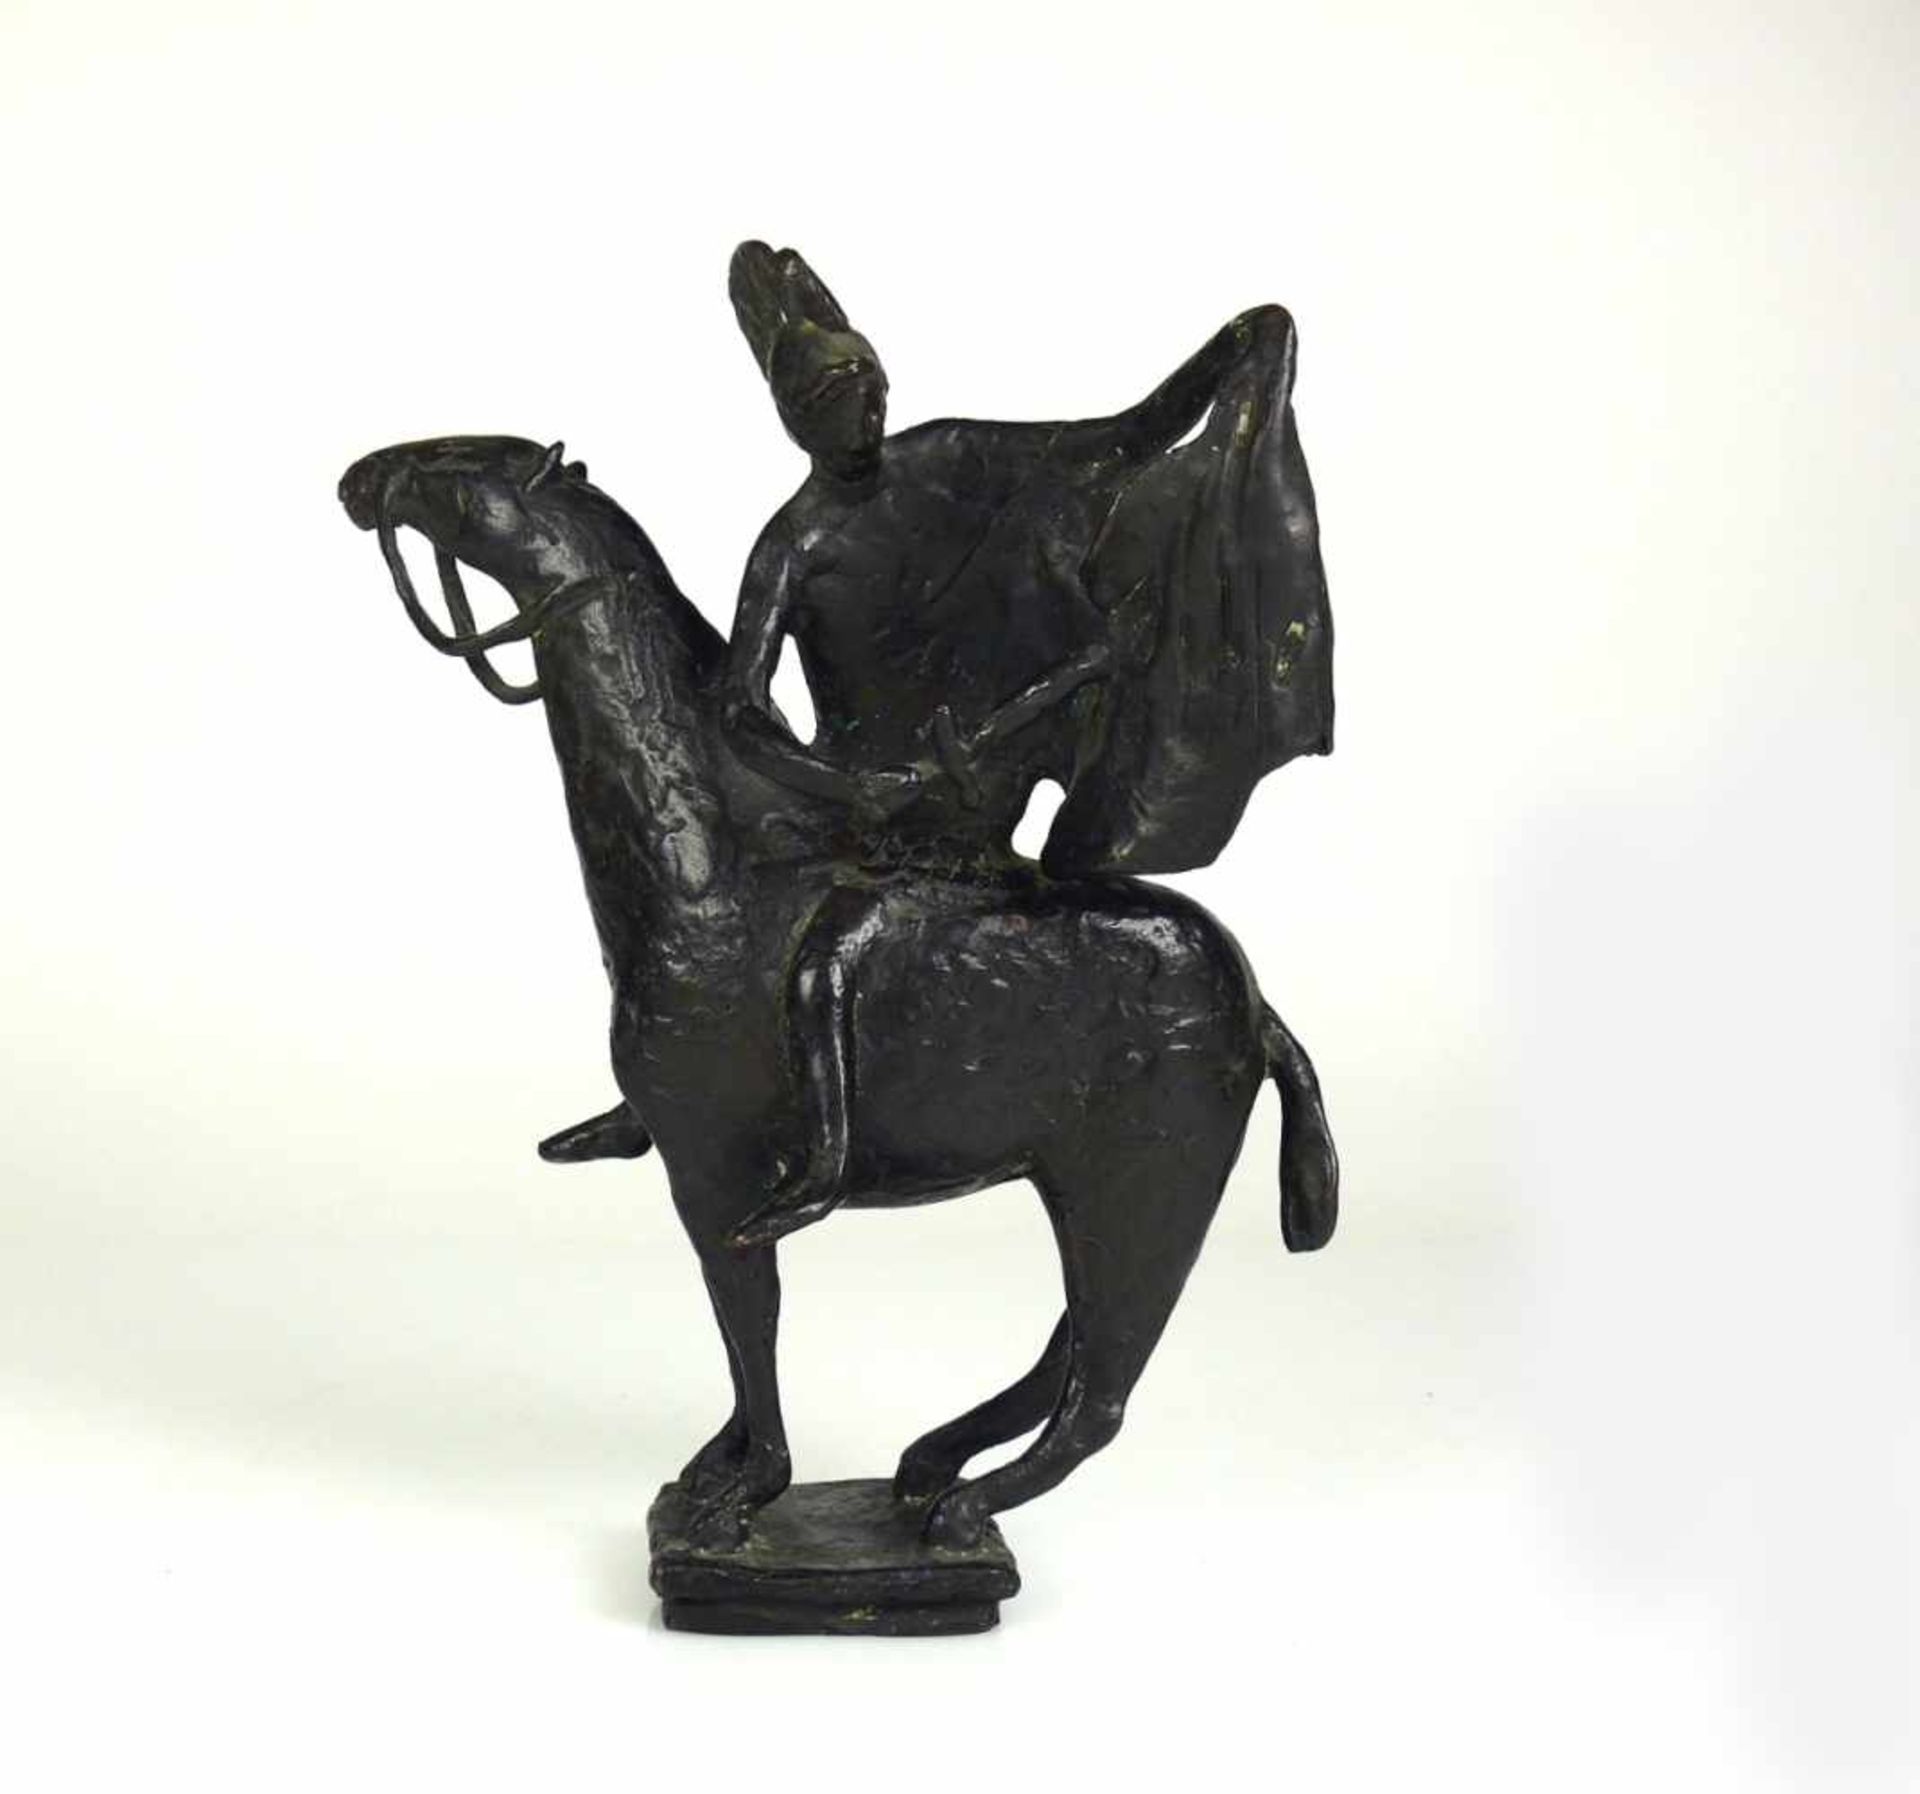 Binding, Wolfgang (1937 München/Köln/Düsseldorf) "Hlg. St. Martin" auf Pferd; Bronze, dunkel